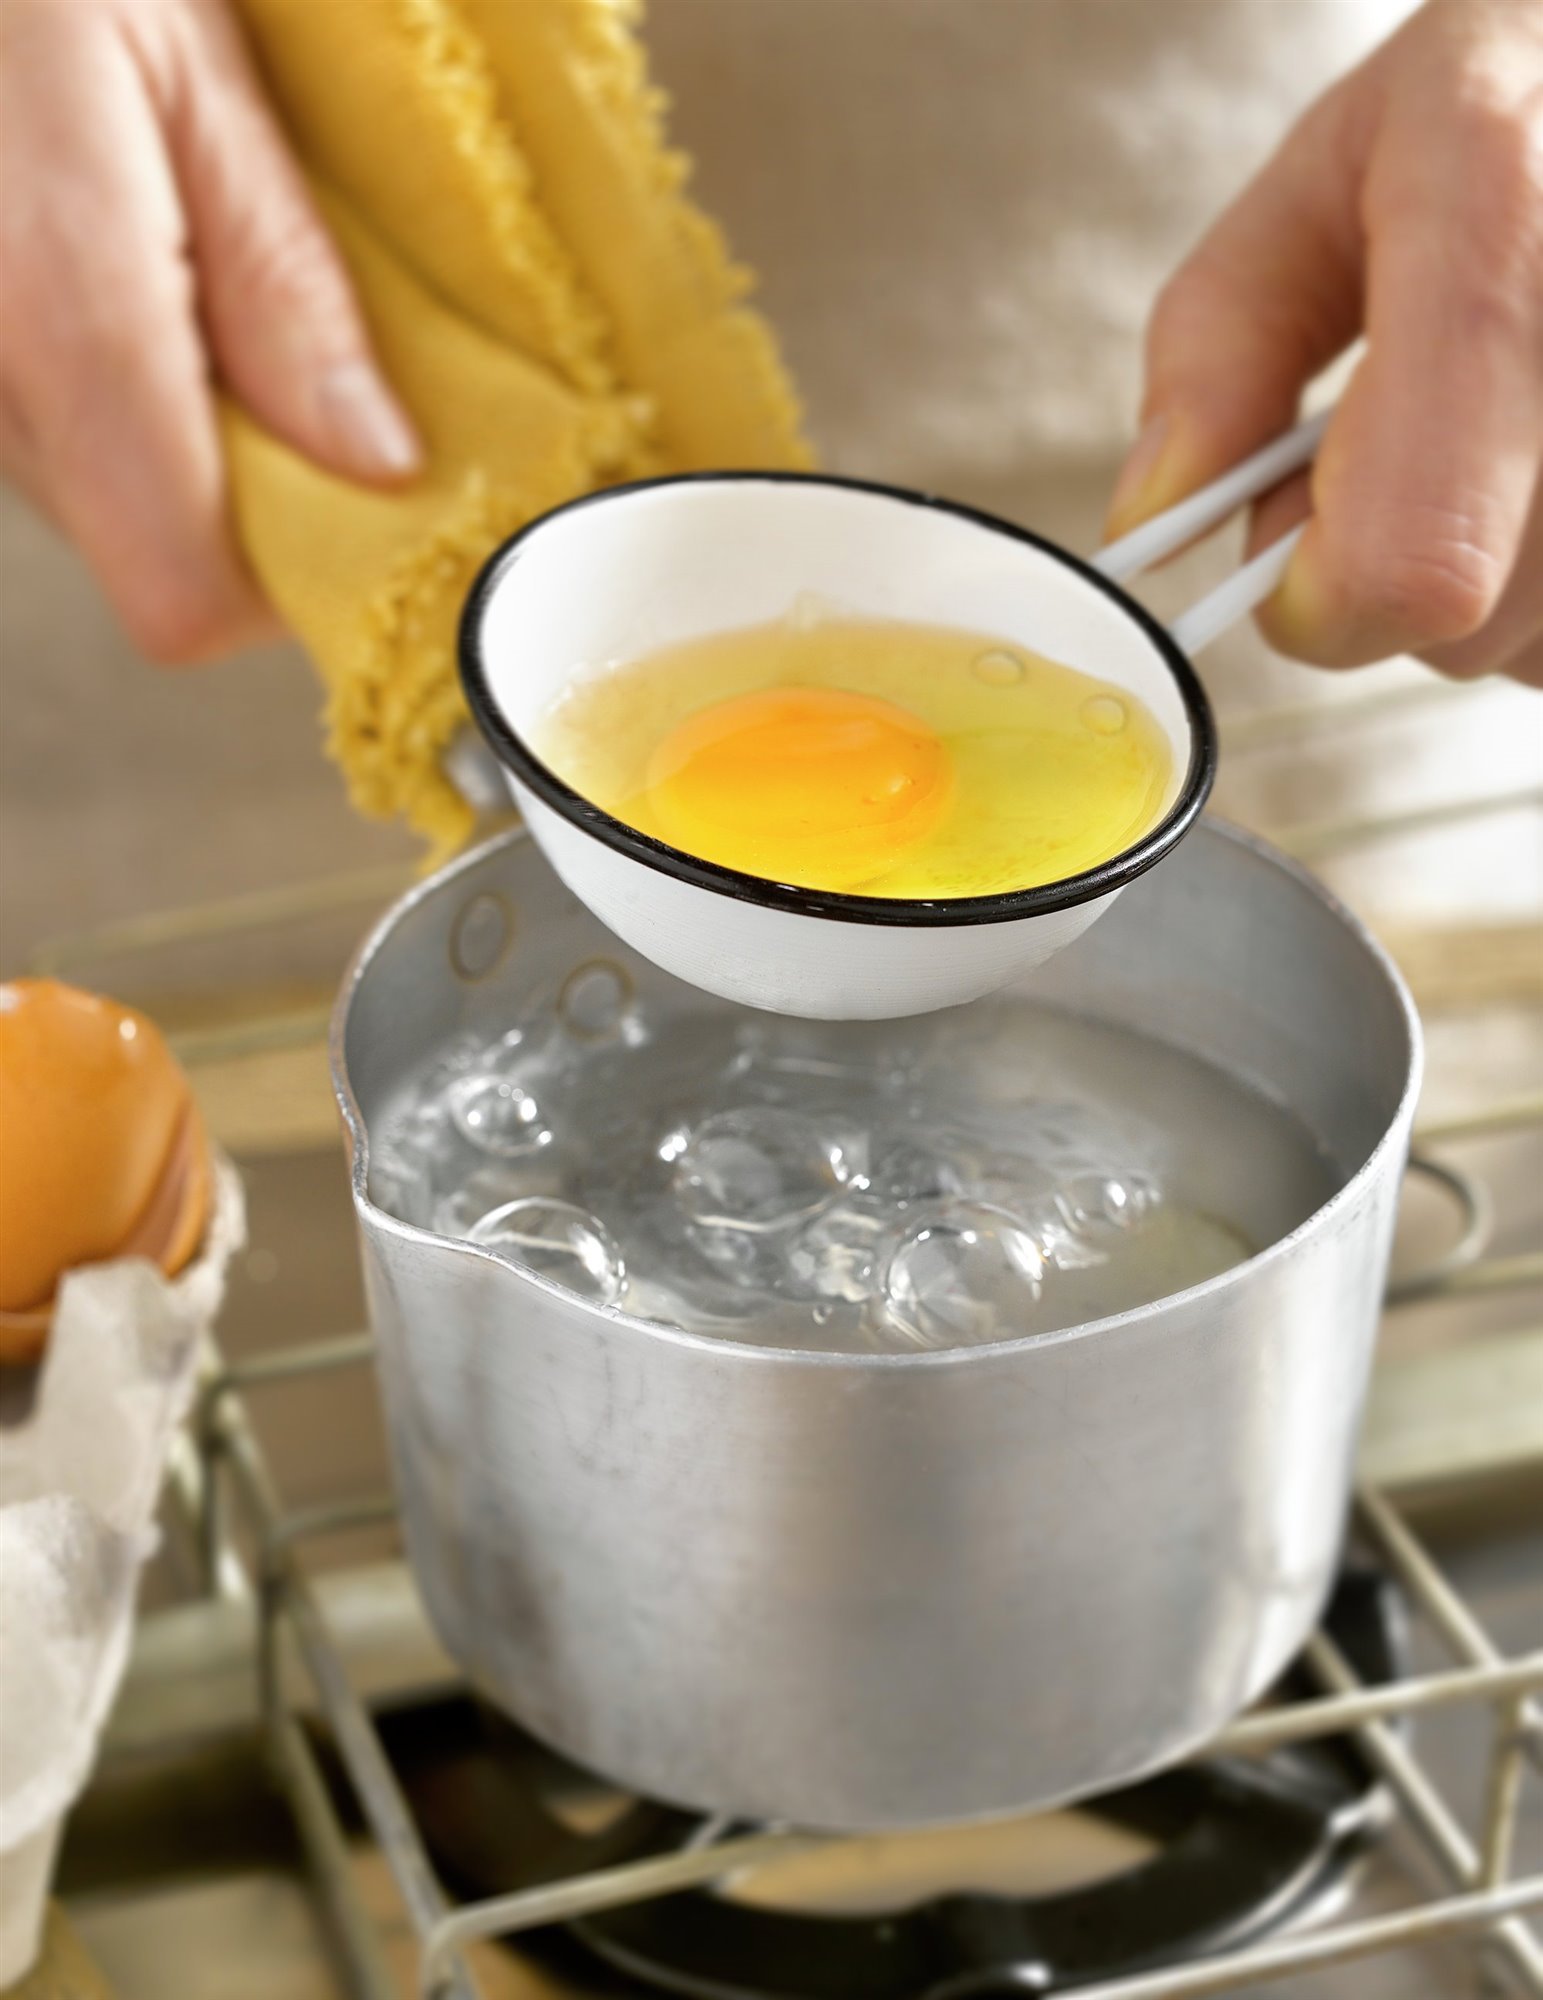 5. Escalfa los huevos en agua con vinagre